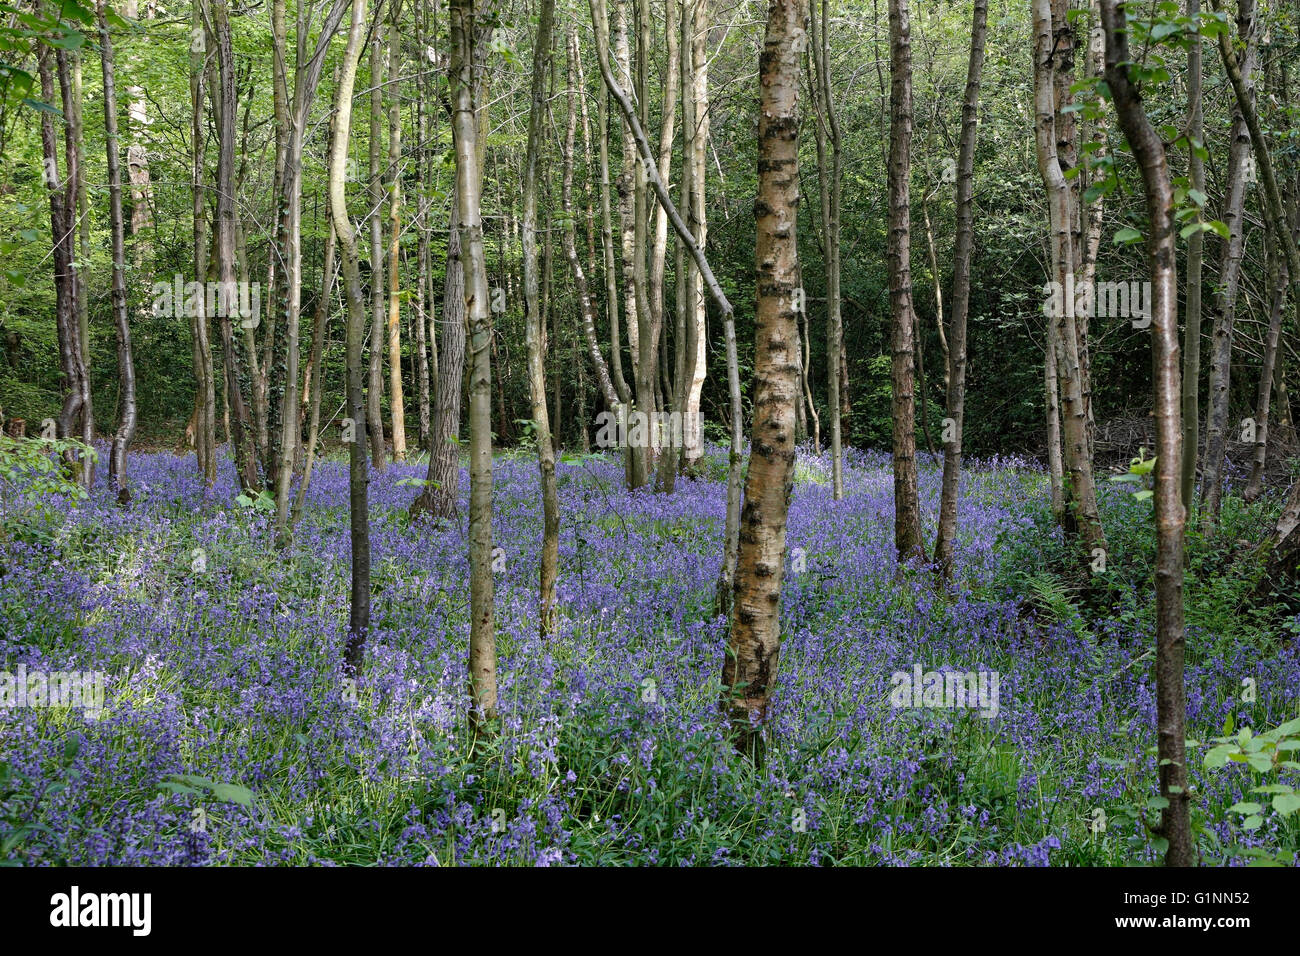 Bluebells poussant à Ecclesall Woods Sheffield Angleterre Royaume-Uni. Biodiversité des forêts anciennes de banlieue Banque D'Images